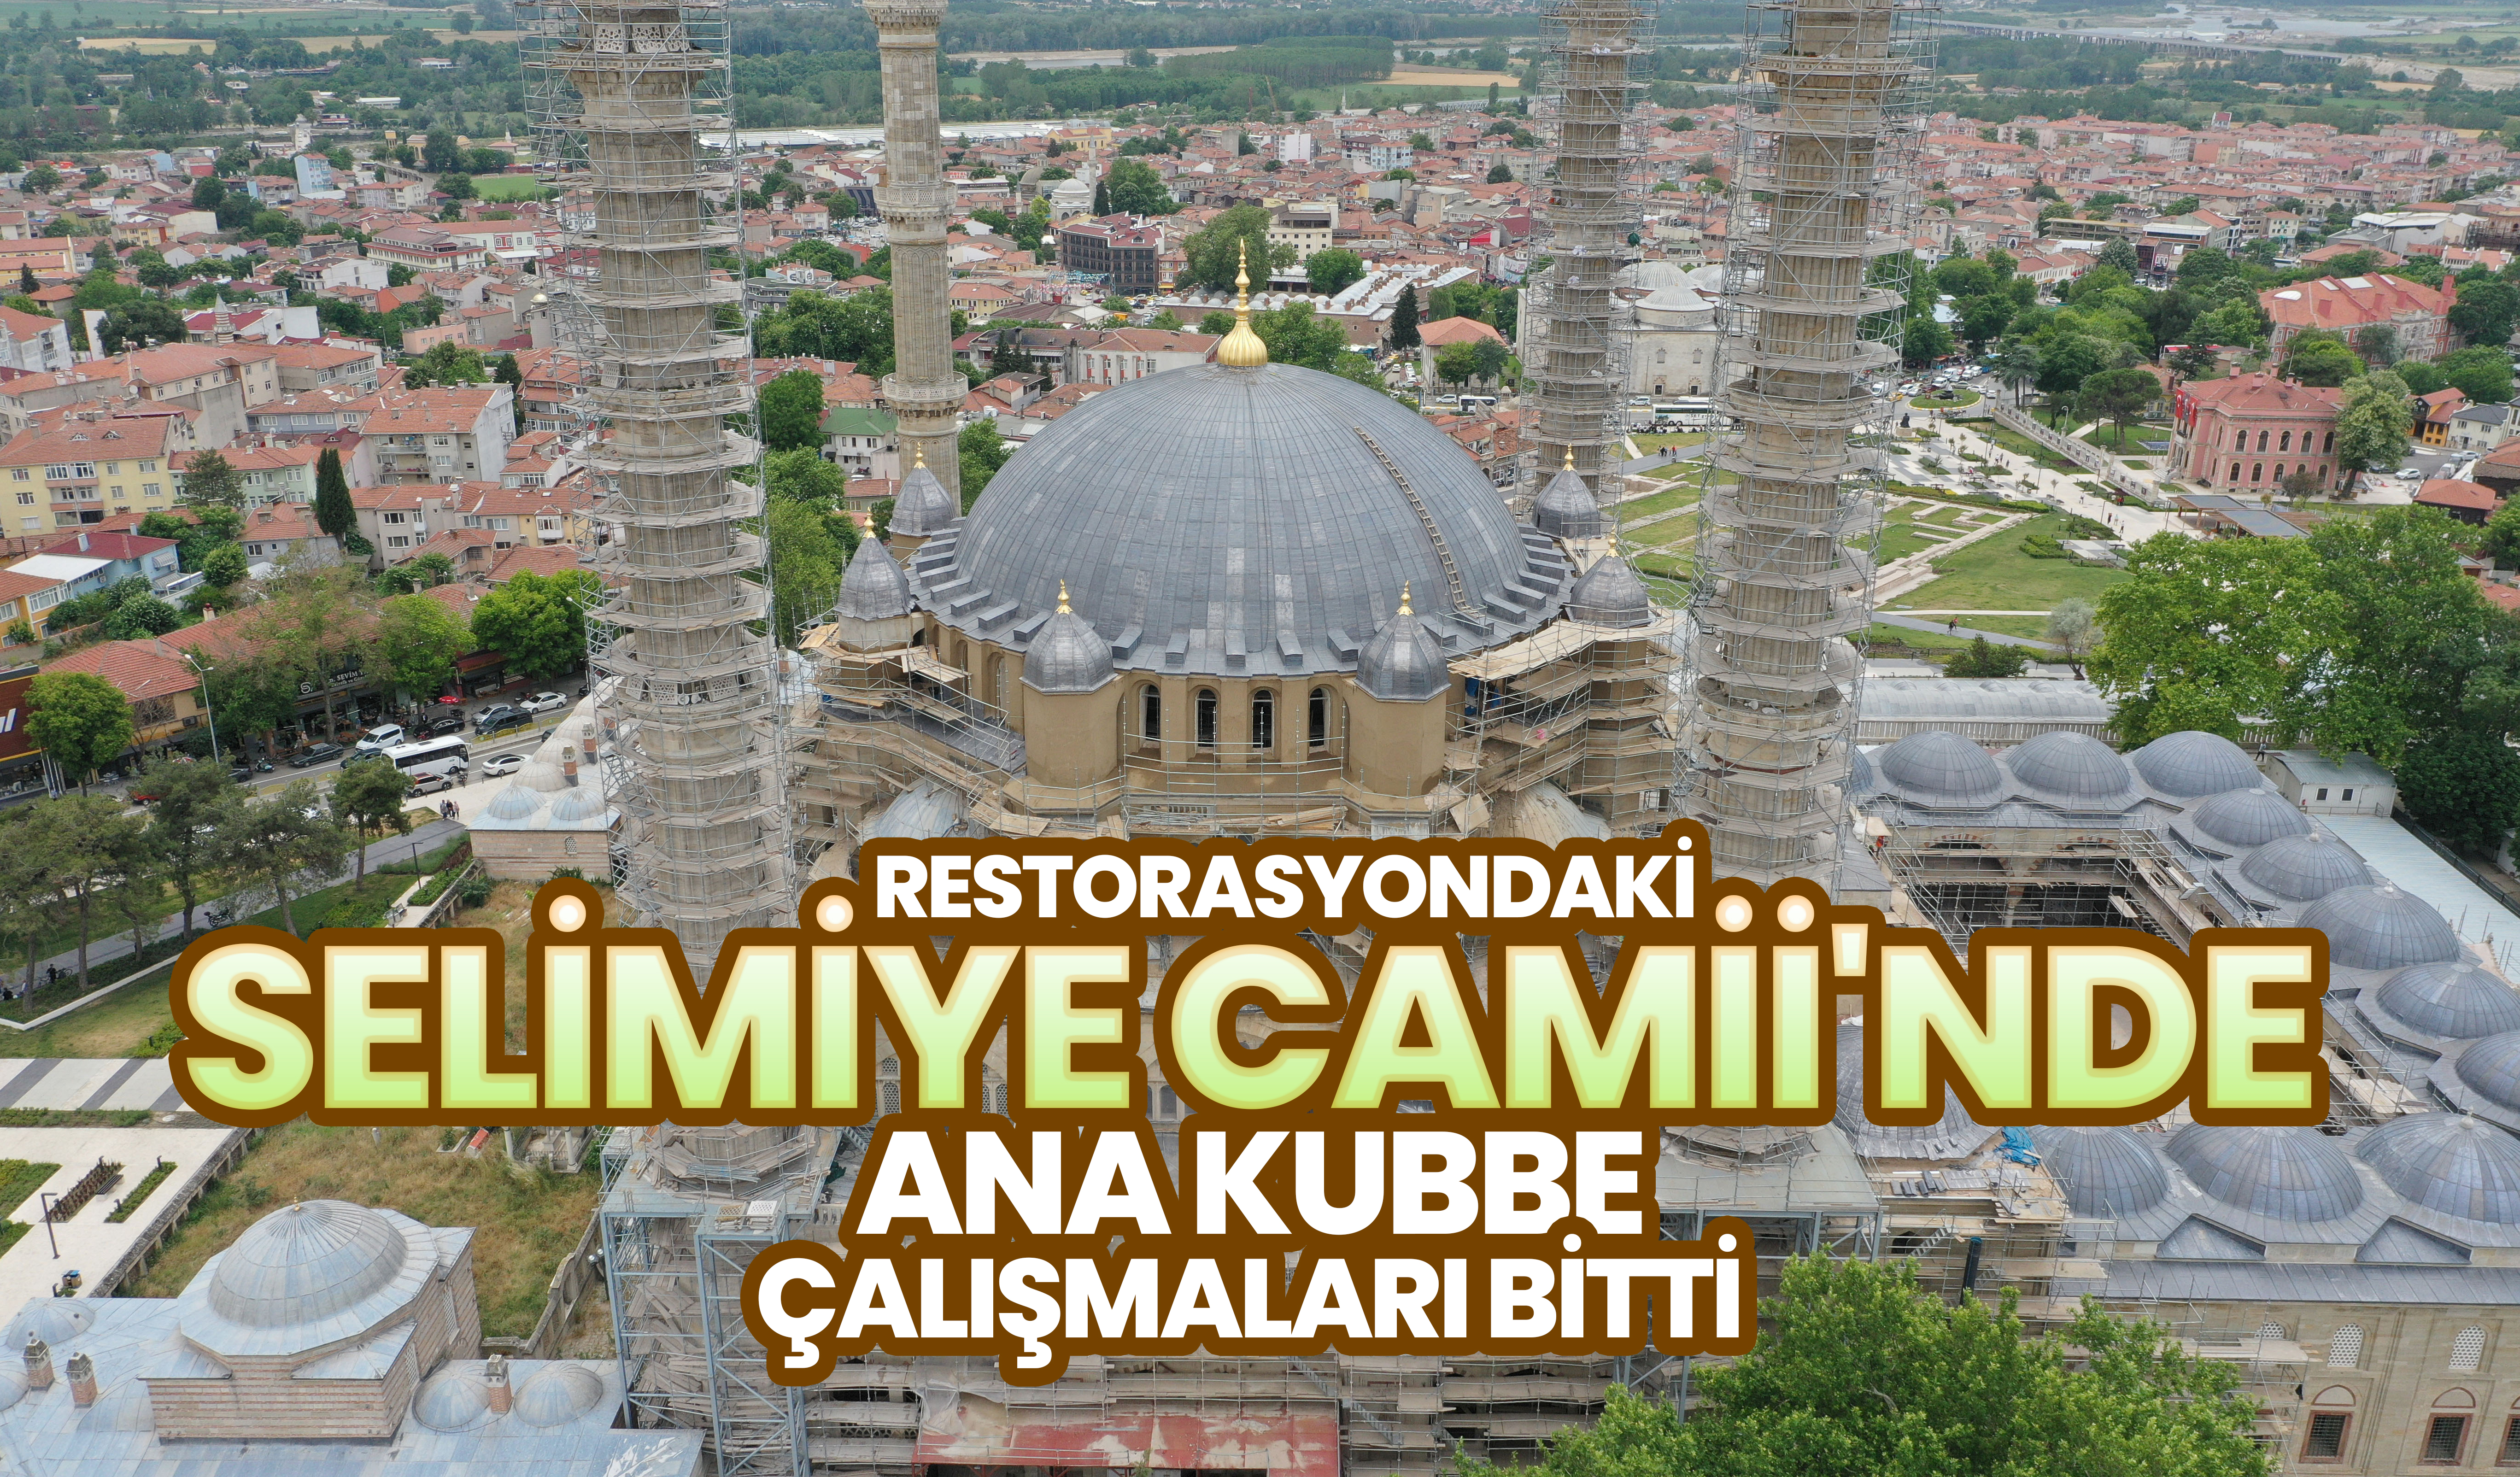 Selimiye Camii'nde ana kubbe çalışmaları bitti